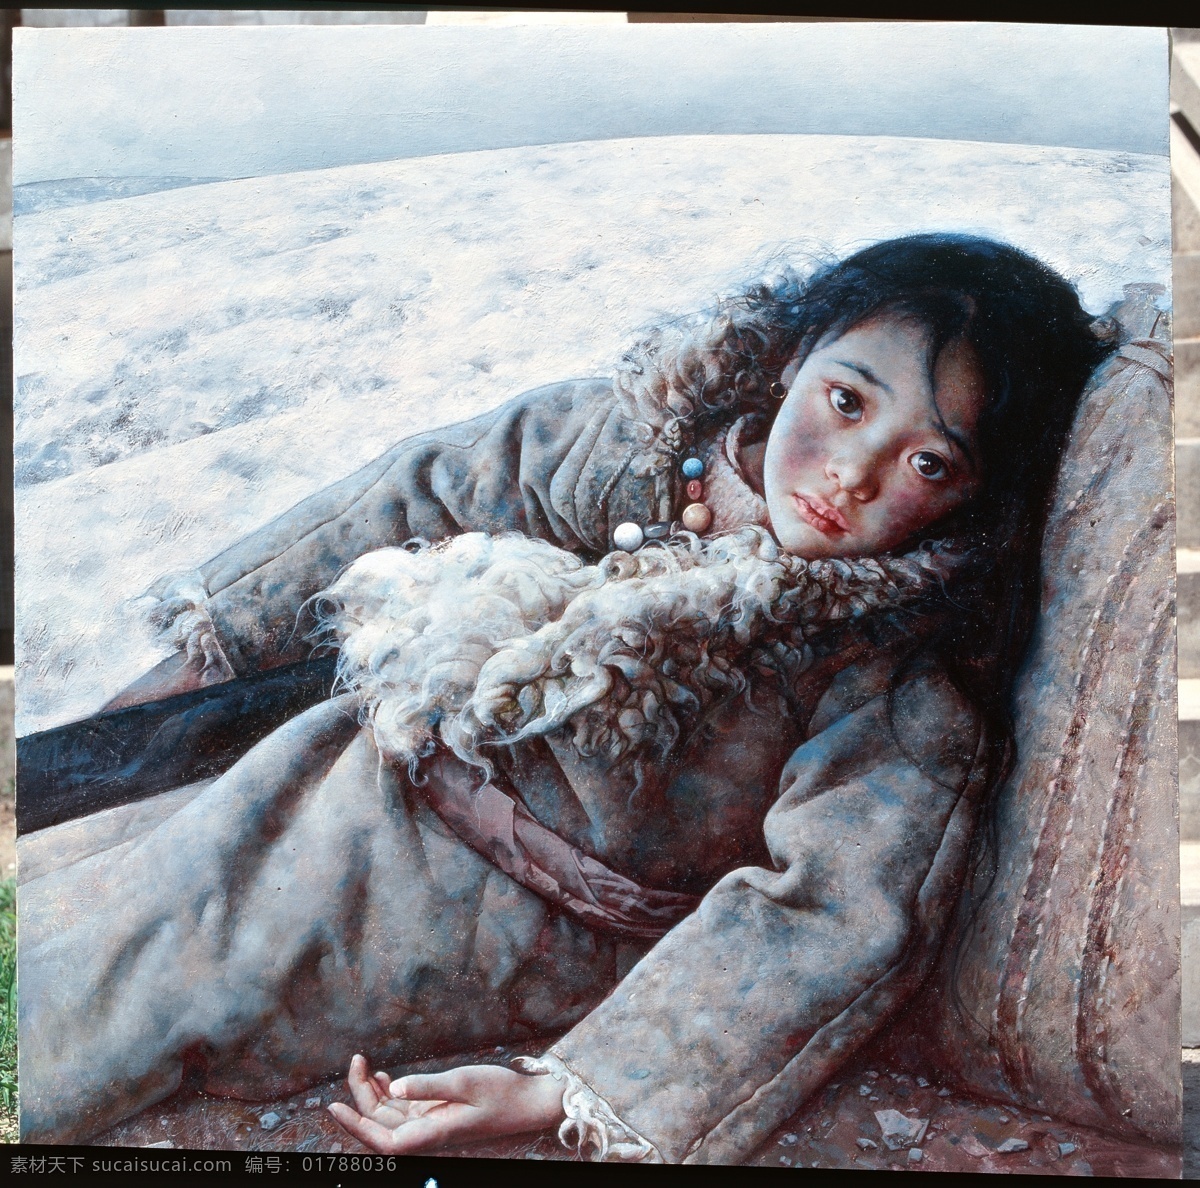 艾轩 高清图集 艾轩绘画 艾轩油画 西藏女孩 艾轩作品 油画女孩 名师画集高清 文化艺术 绘画书法